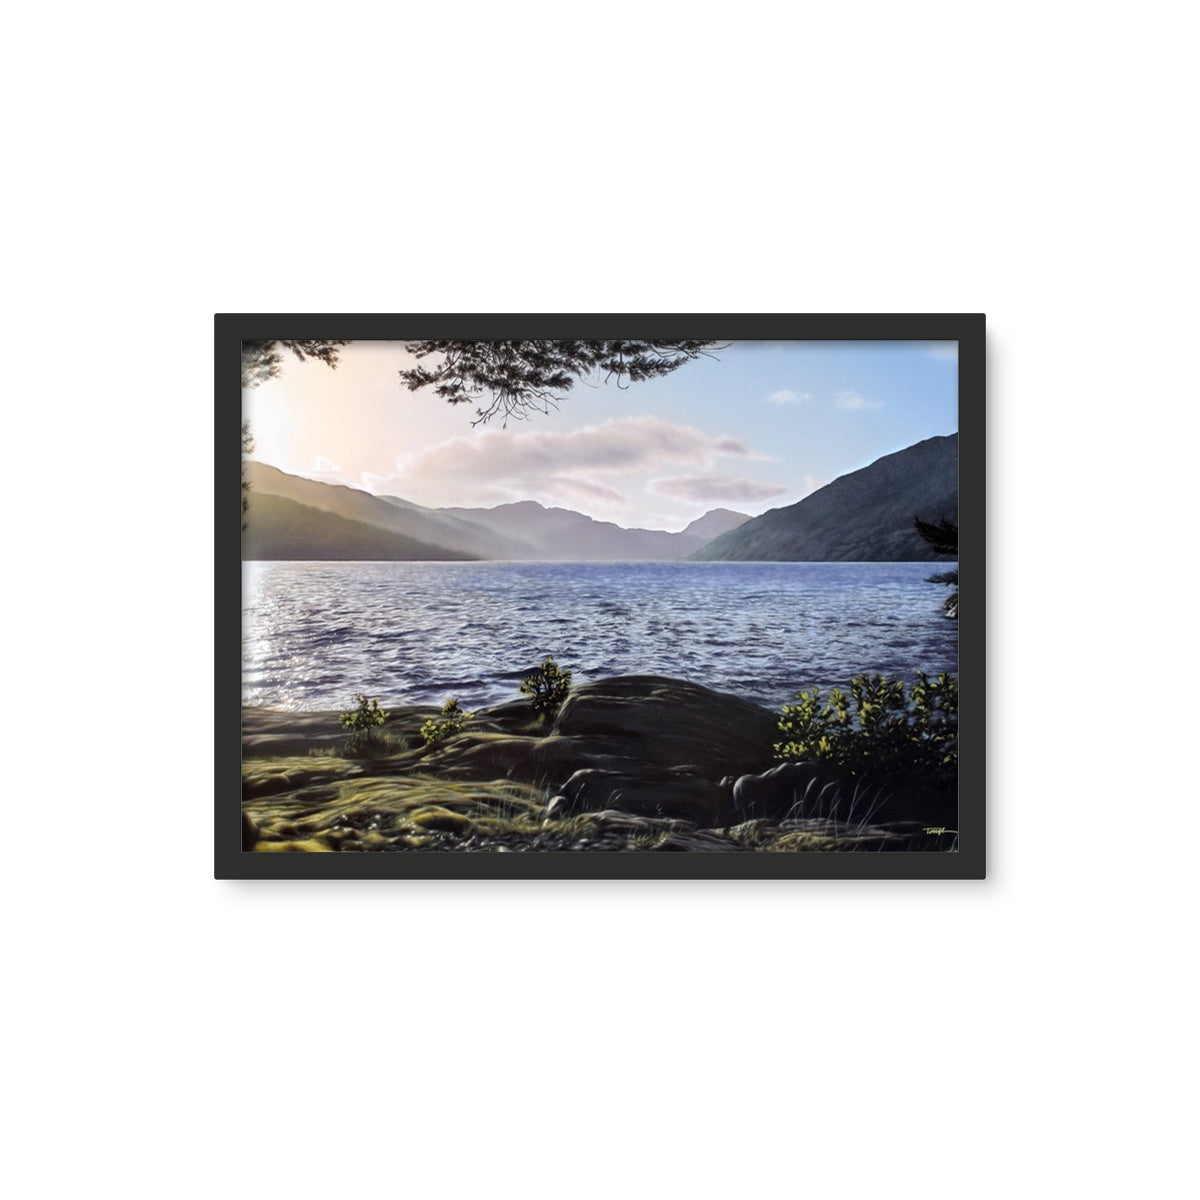 Loch Lomond - Framed Wall Art Tile